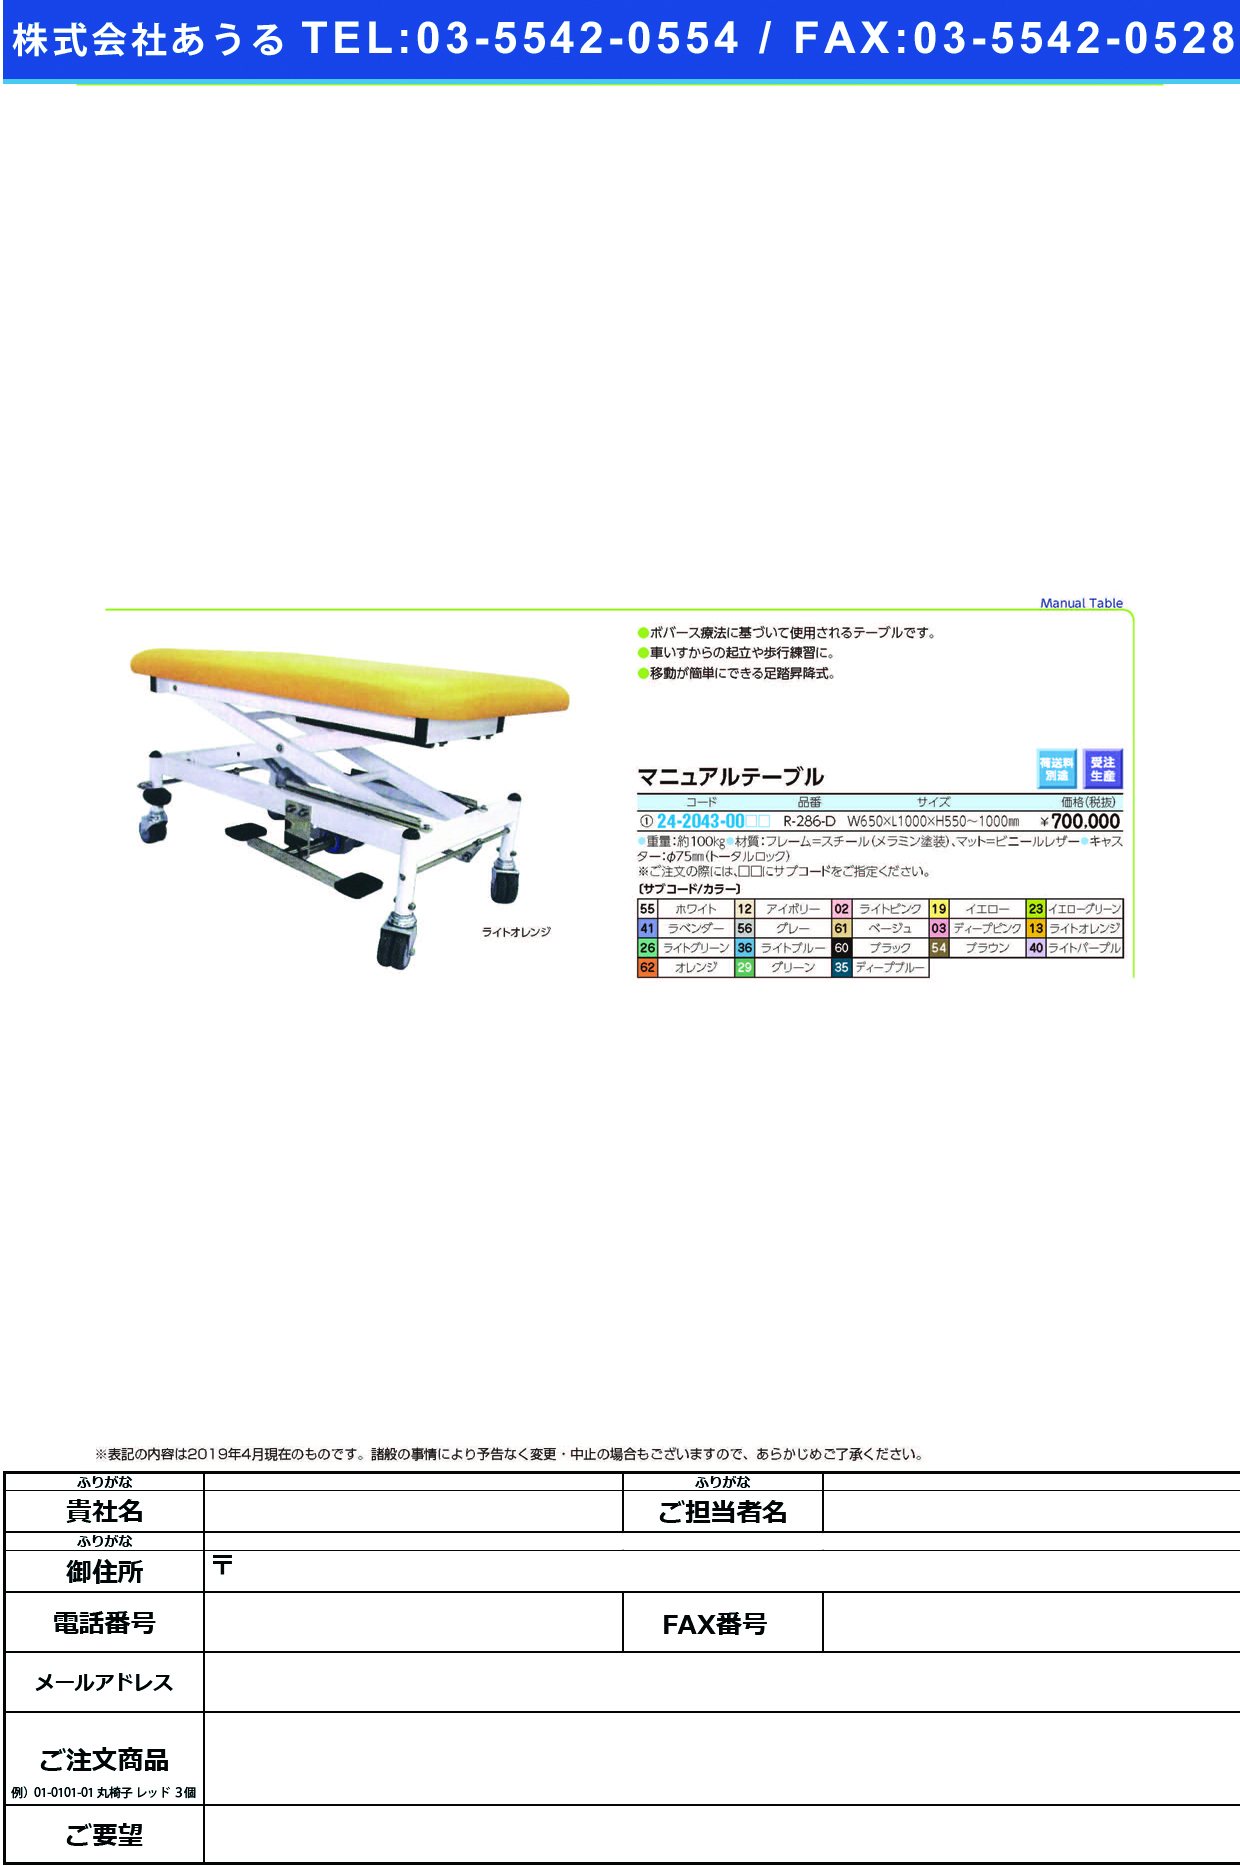 (24-2043-00)マニュアルテーブル R-286-D ﾏﾆｭｱﾙﾃｰﾌﾞﾙ ホワイト【1台単位】【2019年カタログ商品】